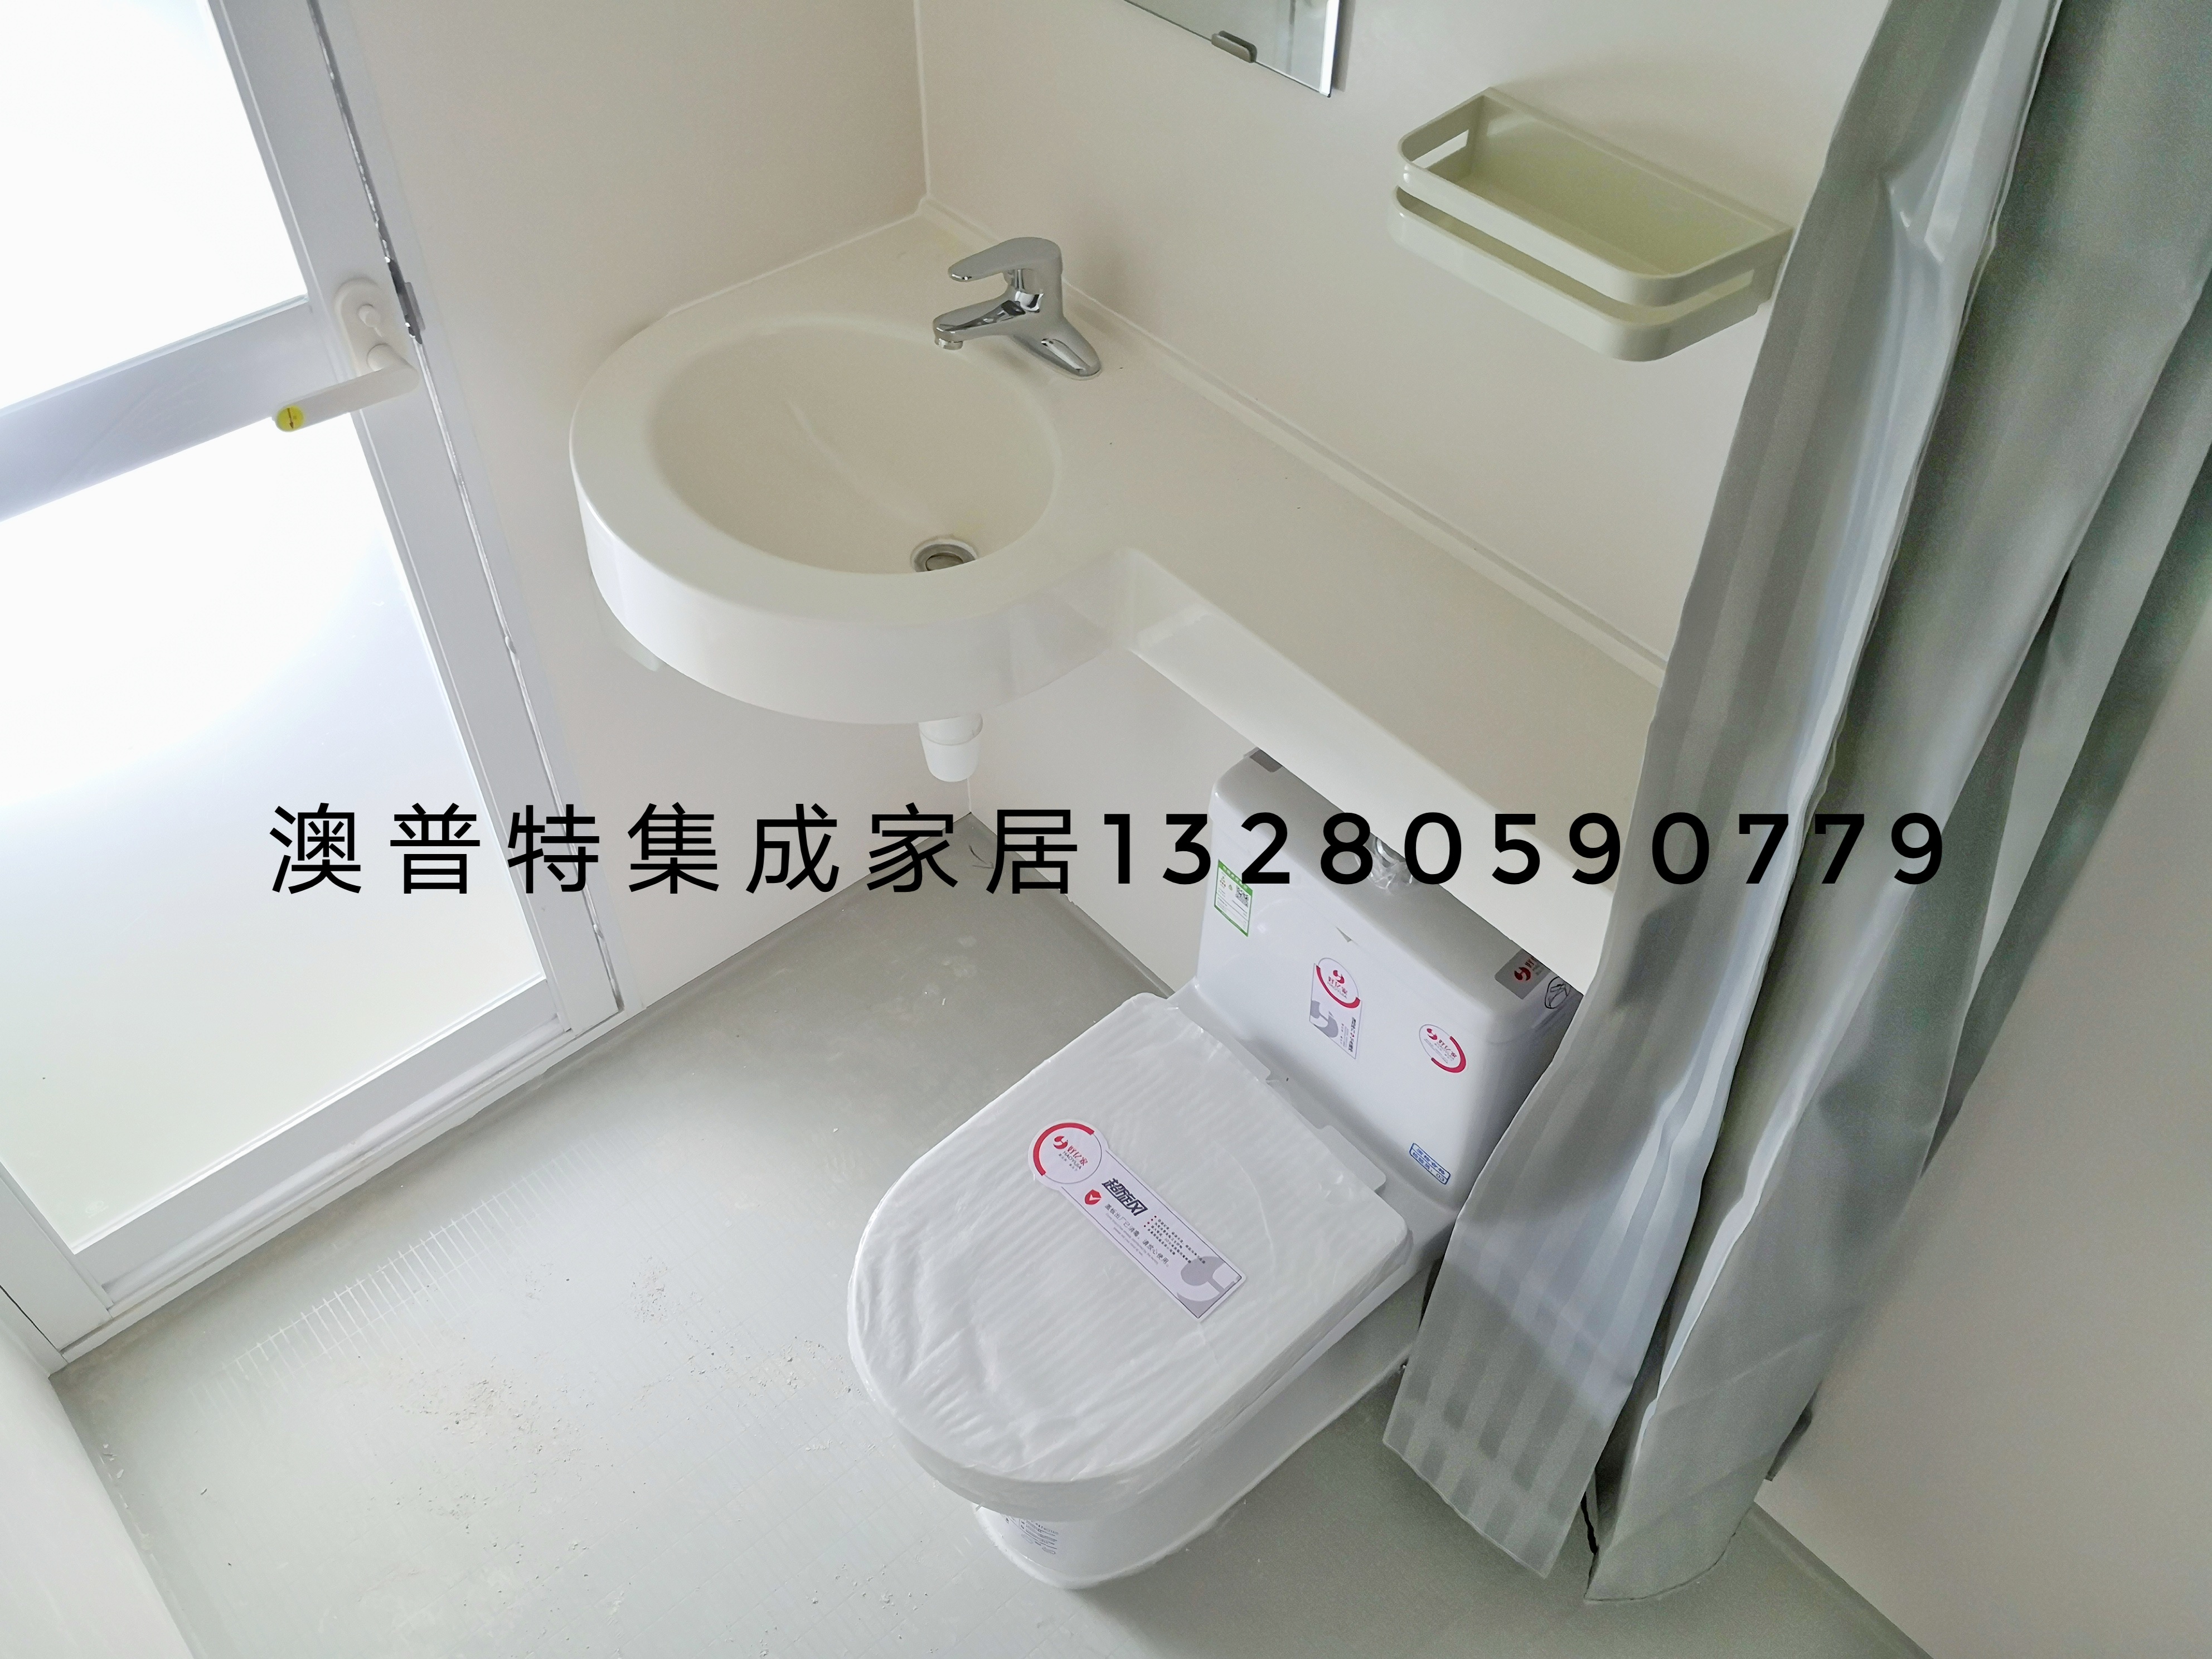 整体浴室 装配式整体卫浴 临沂澳普特集成家居 日式整体浴室房 厂家价格图片